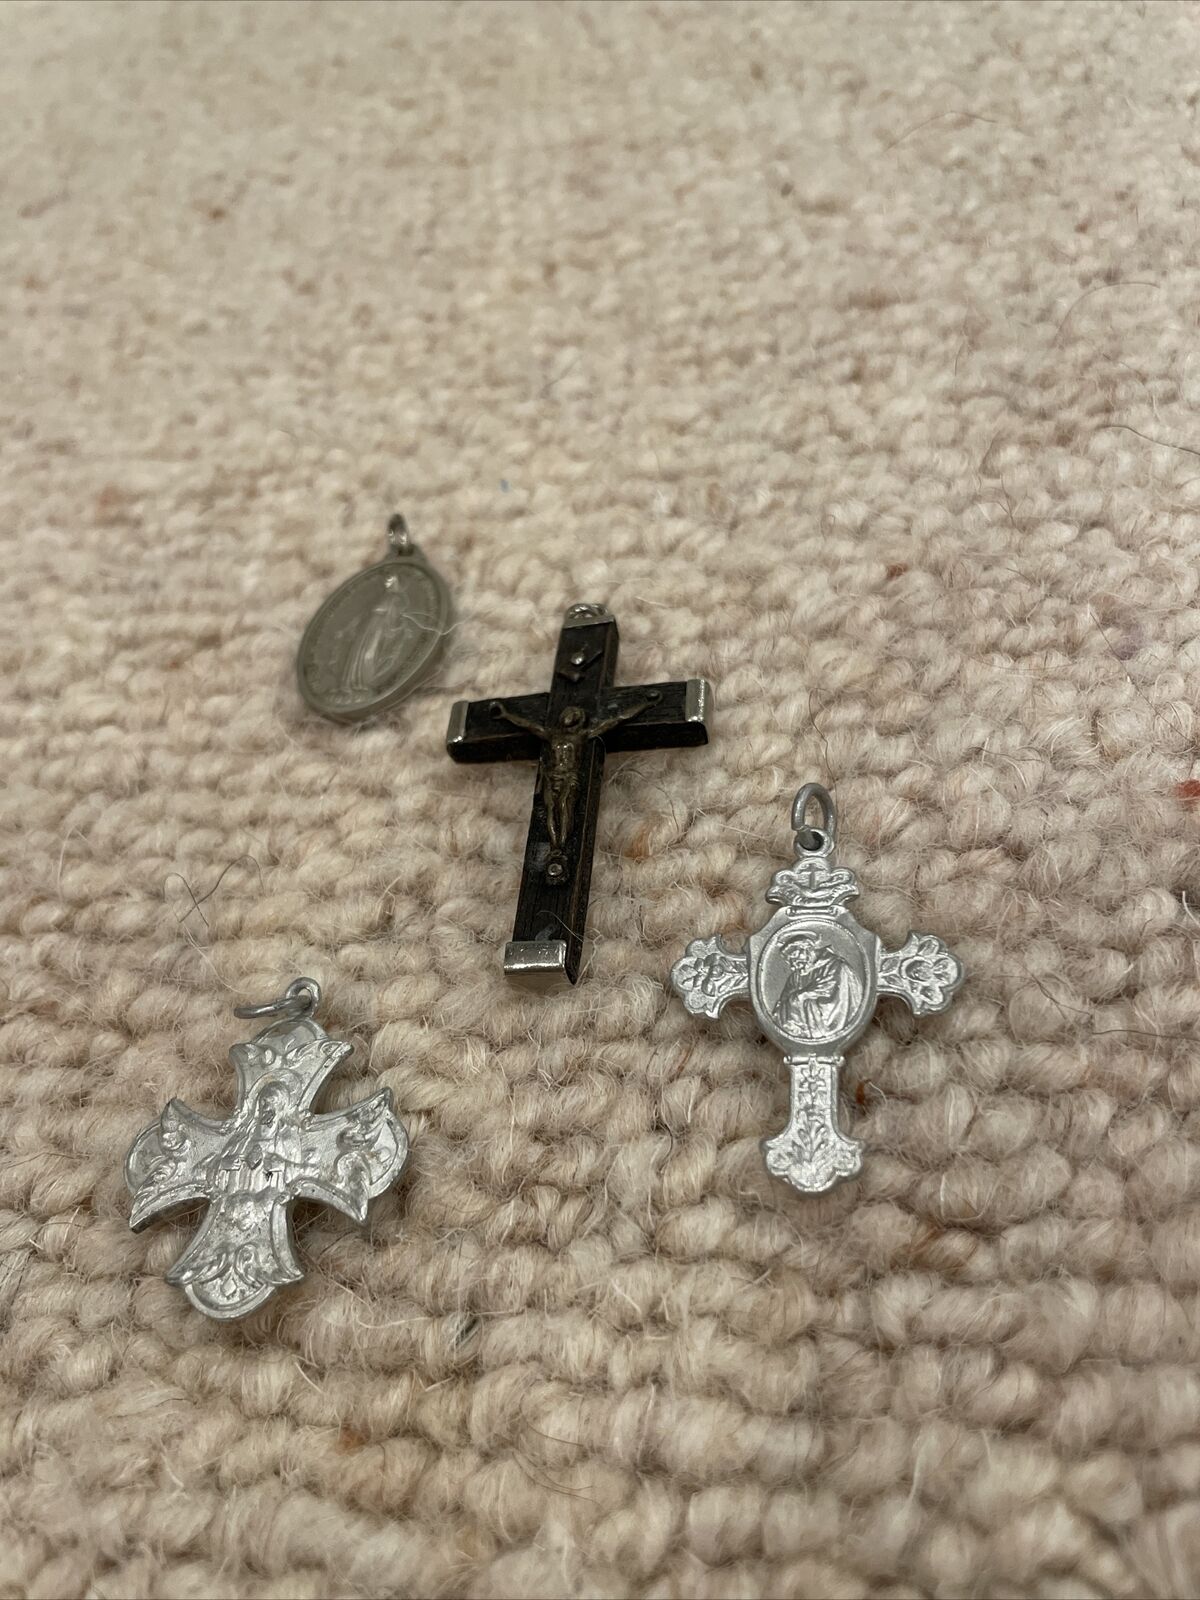 Christian Cross/medallion